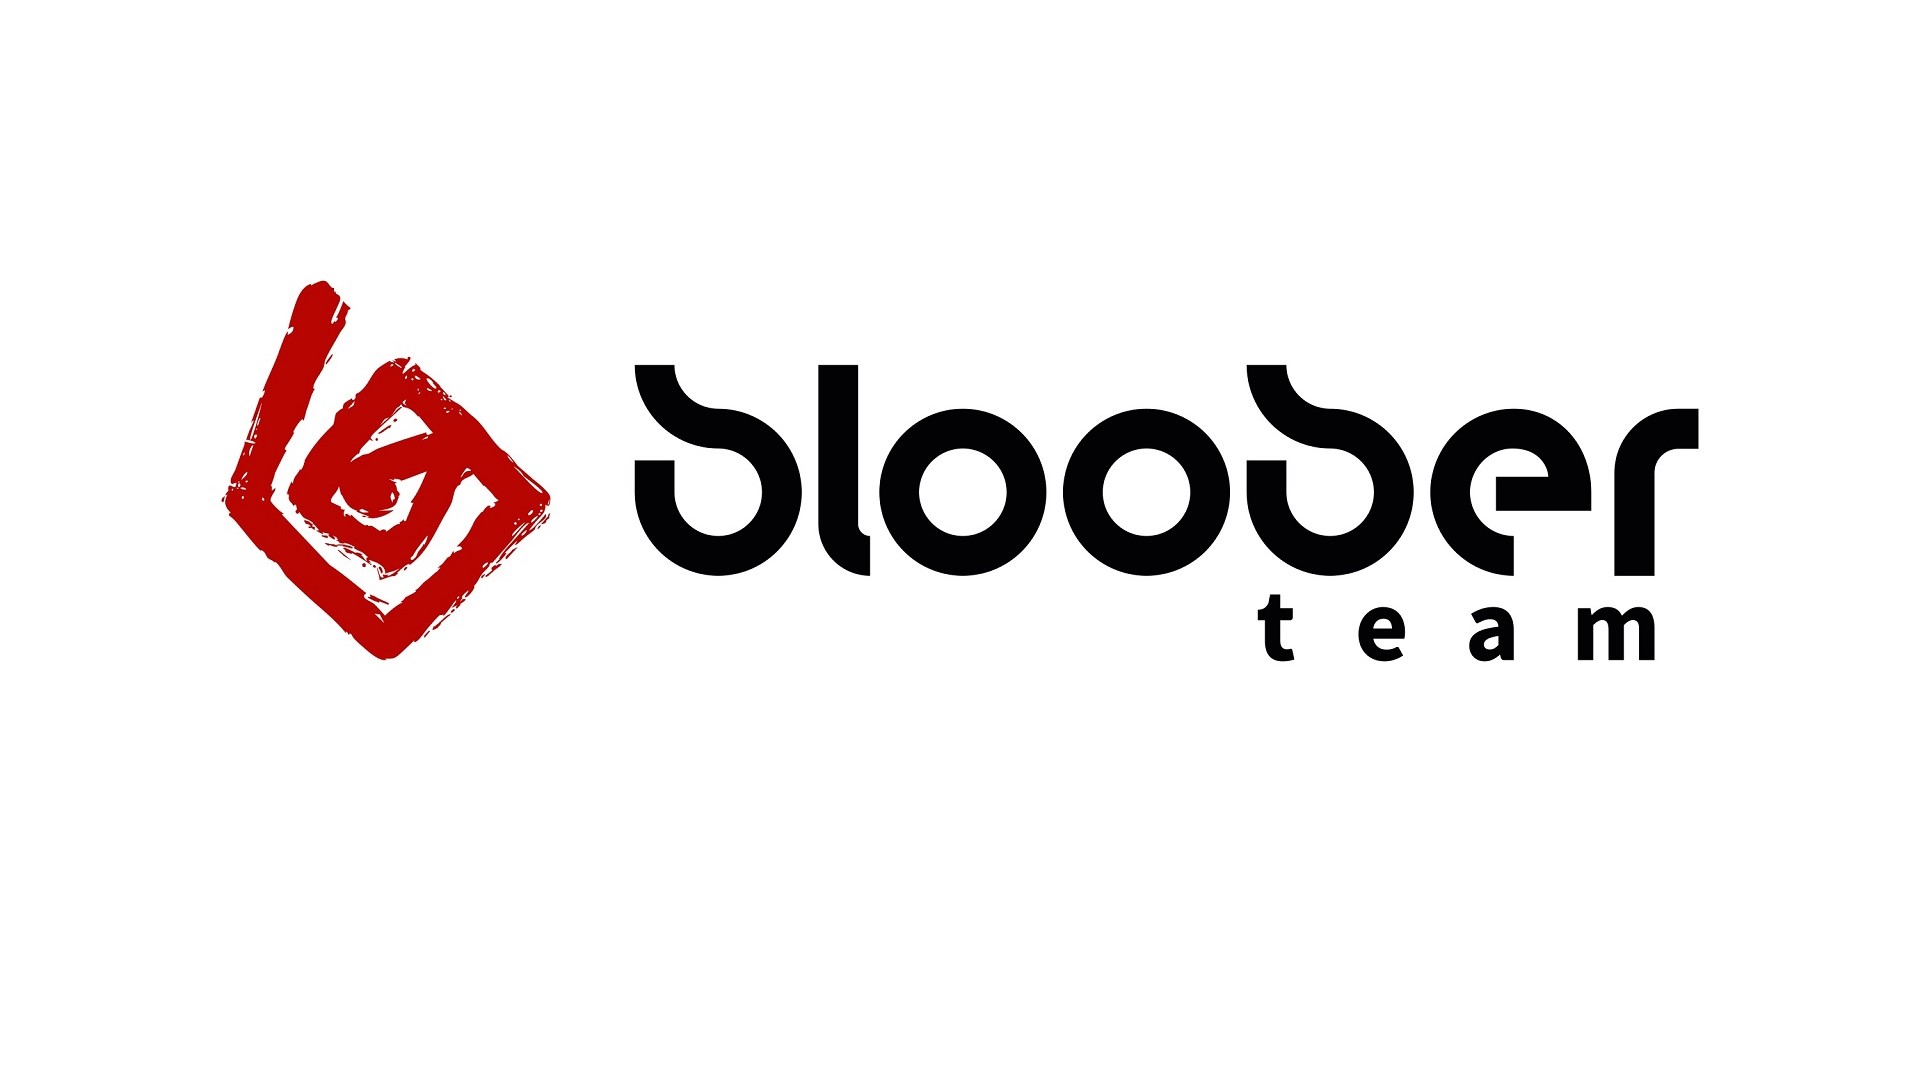 استودیو Bloober Team اعتقاد دارد پروژه‌های آتی آن‌ها ۱۰ میلیون نسخه خواهند فروخت